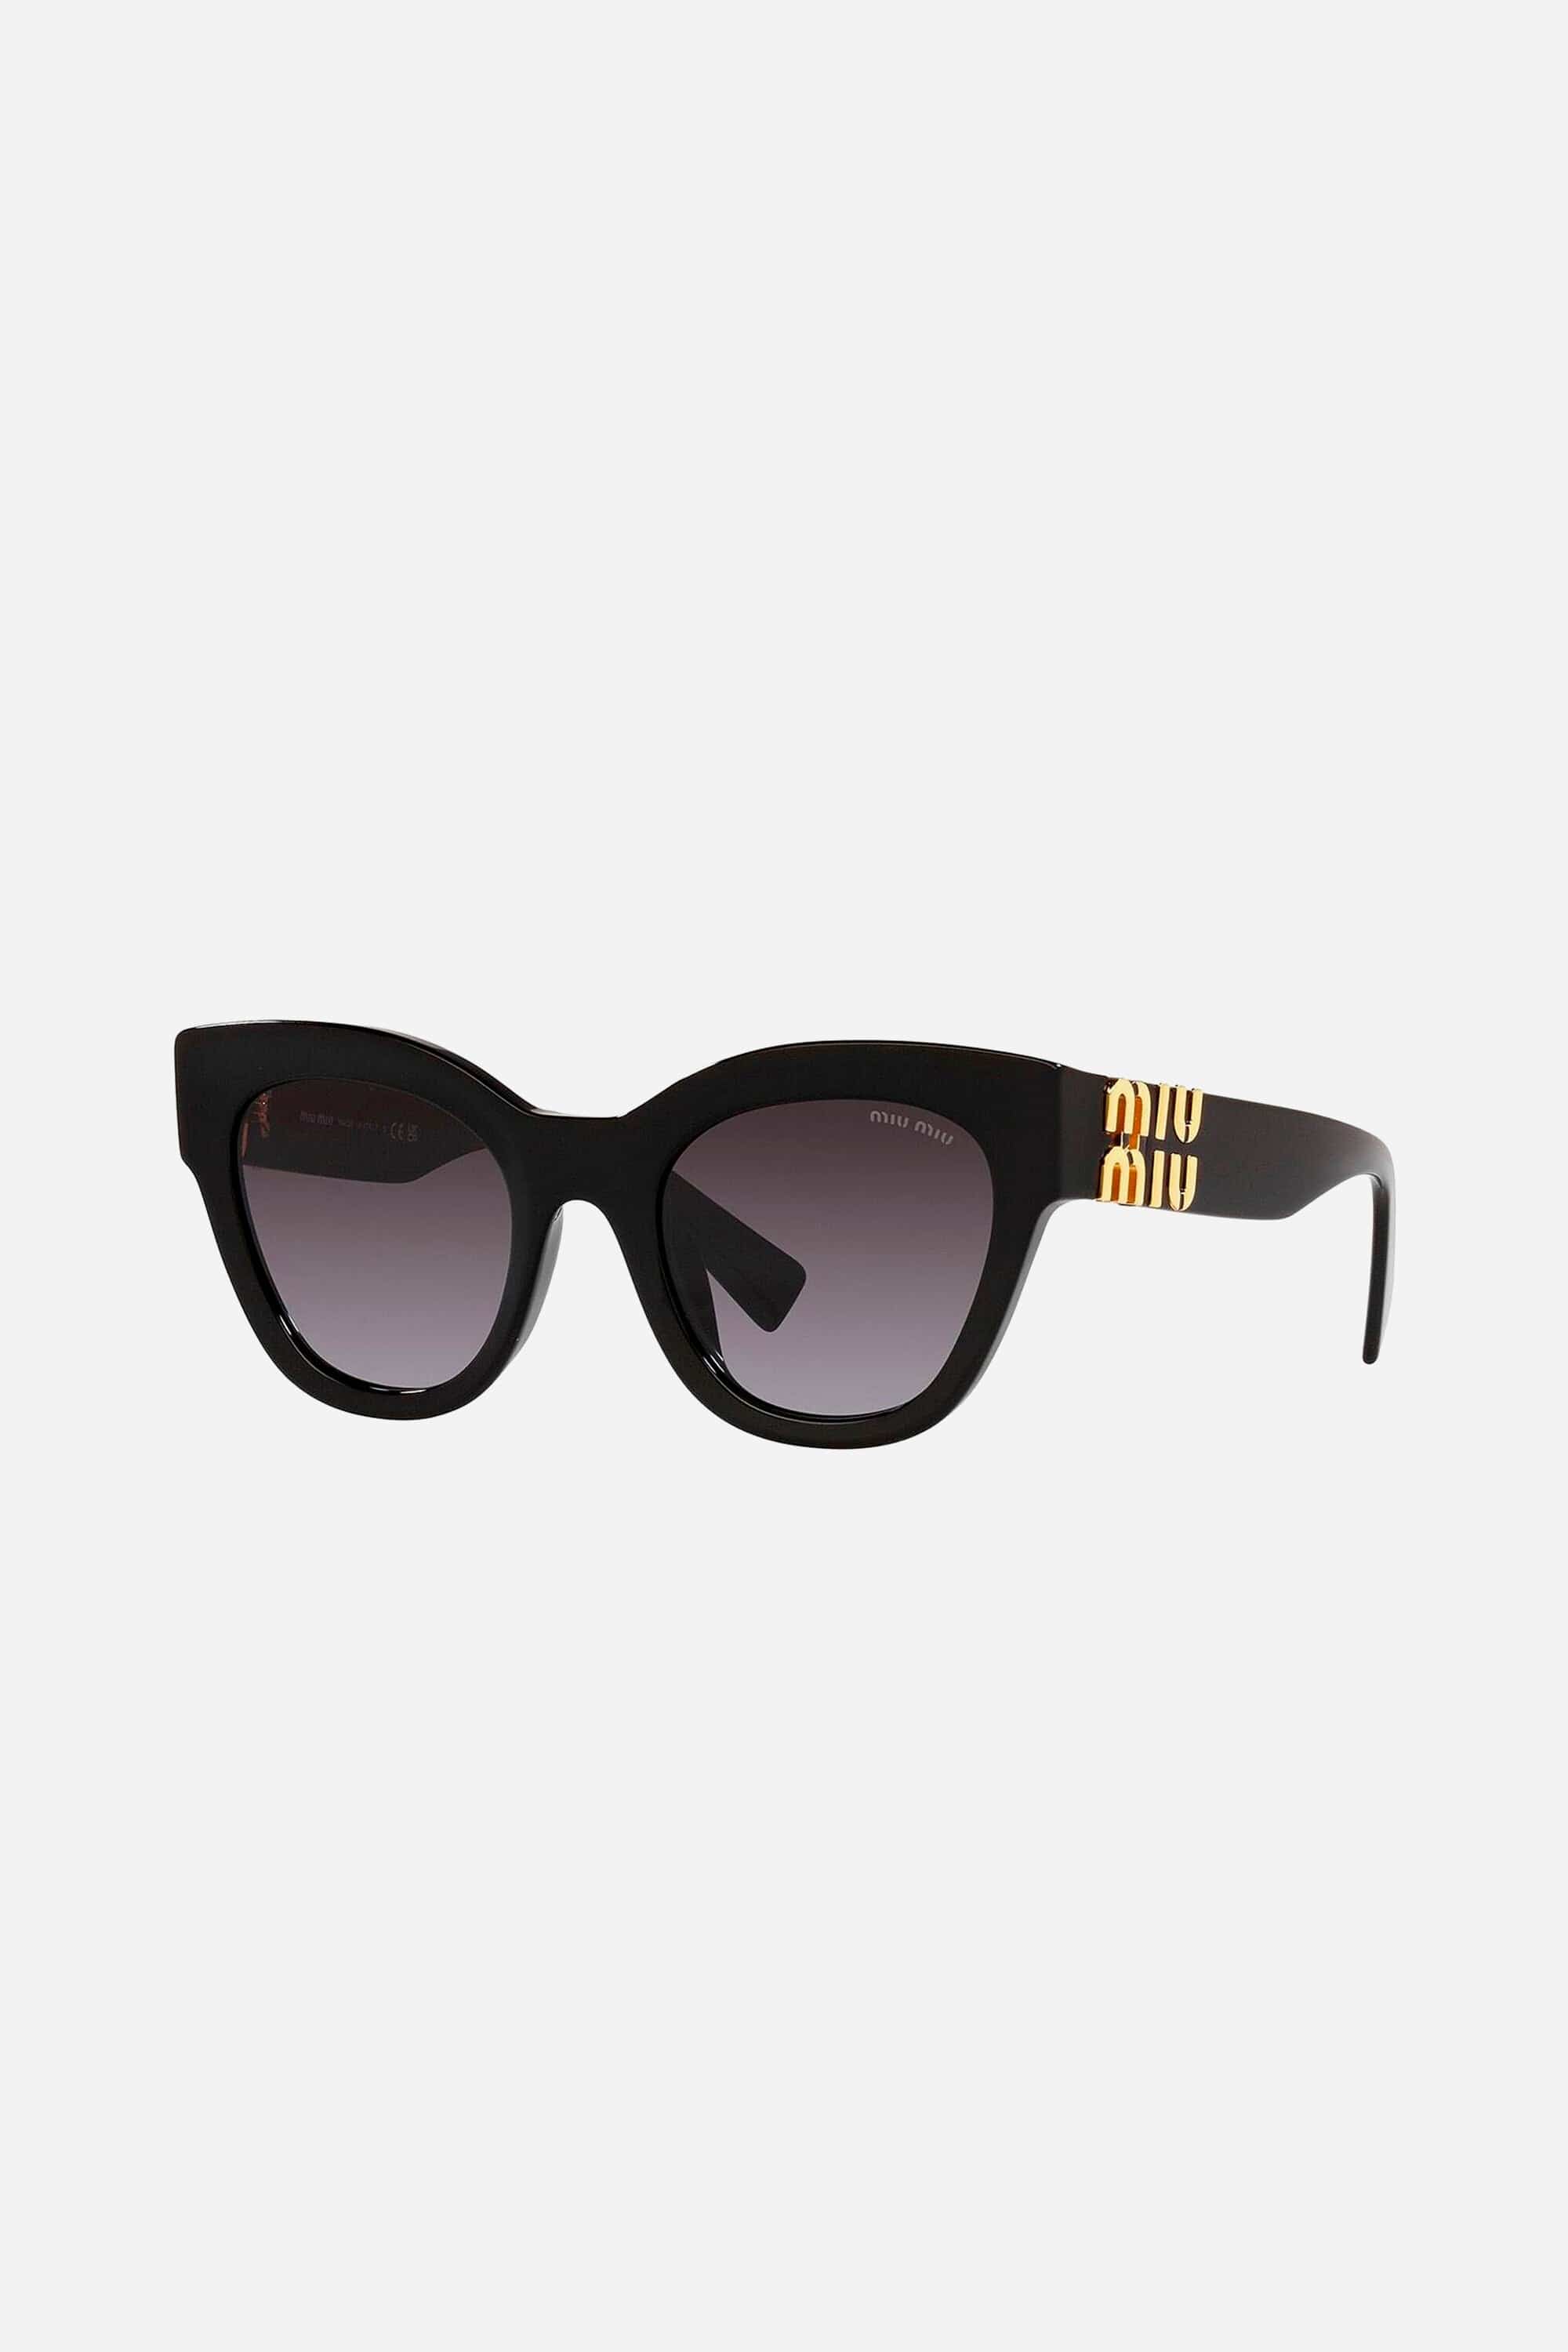 Miu Miu cat-eye black sunglasses - Eyewear Club